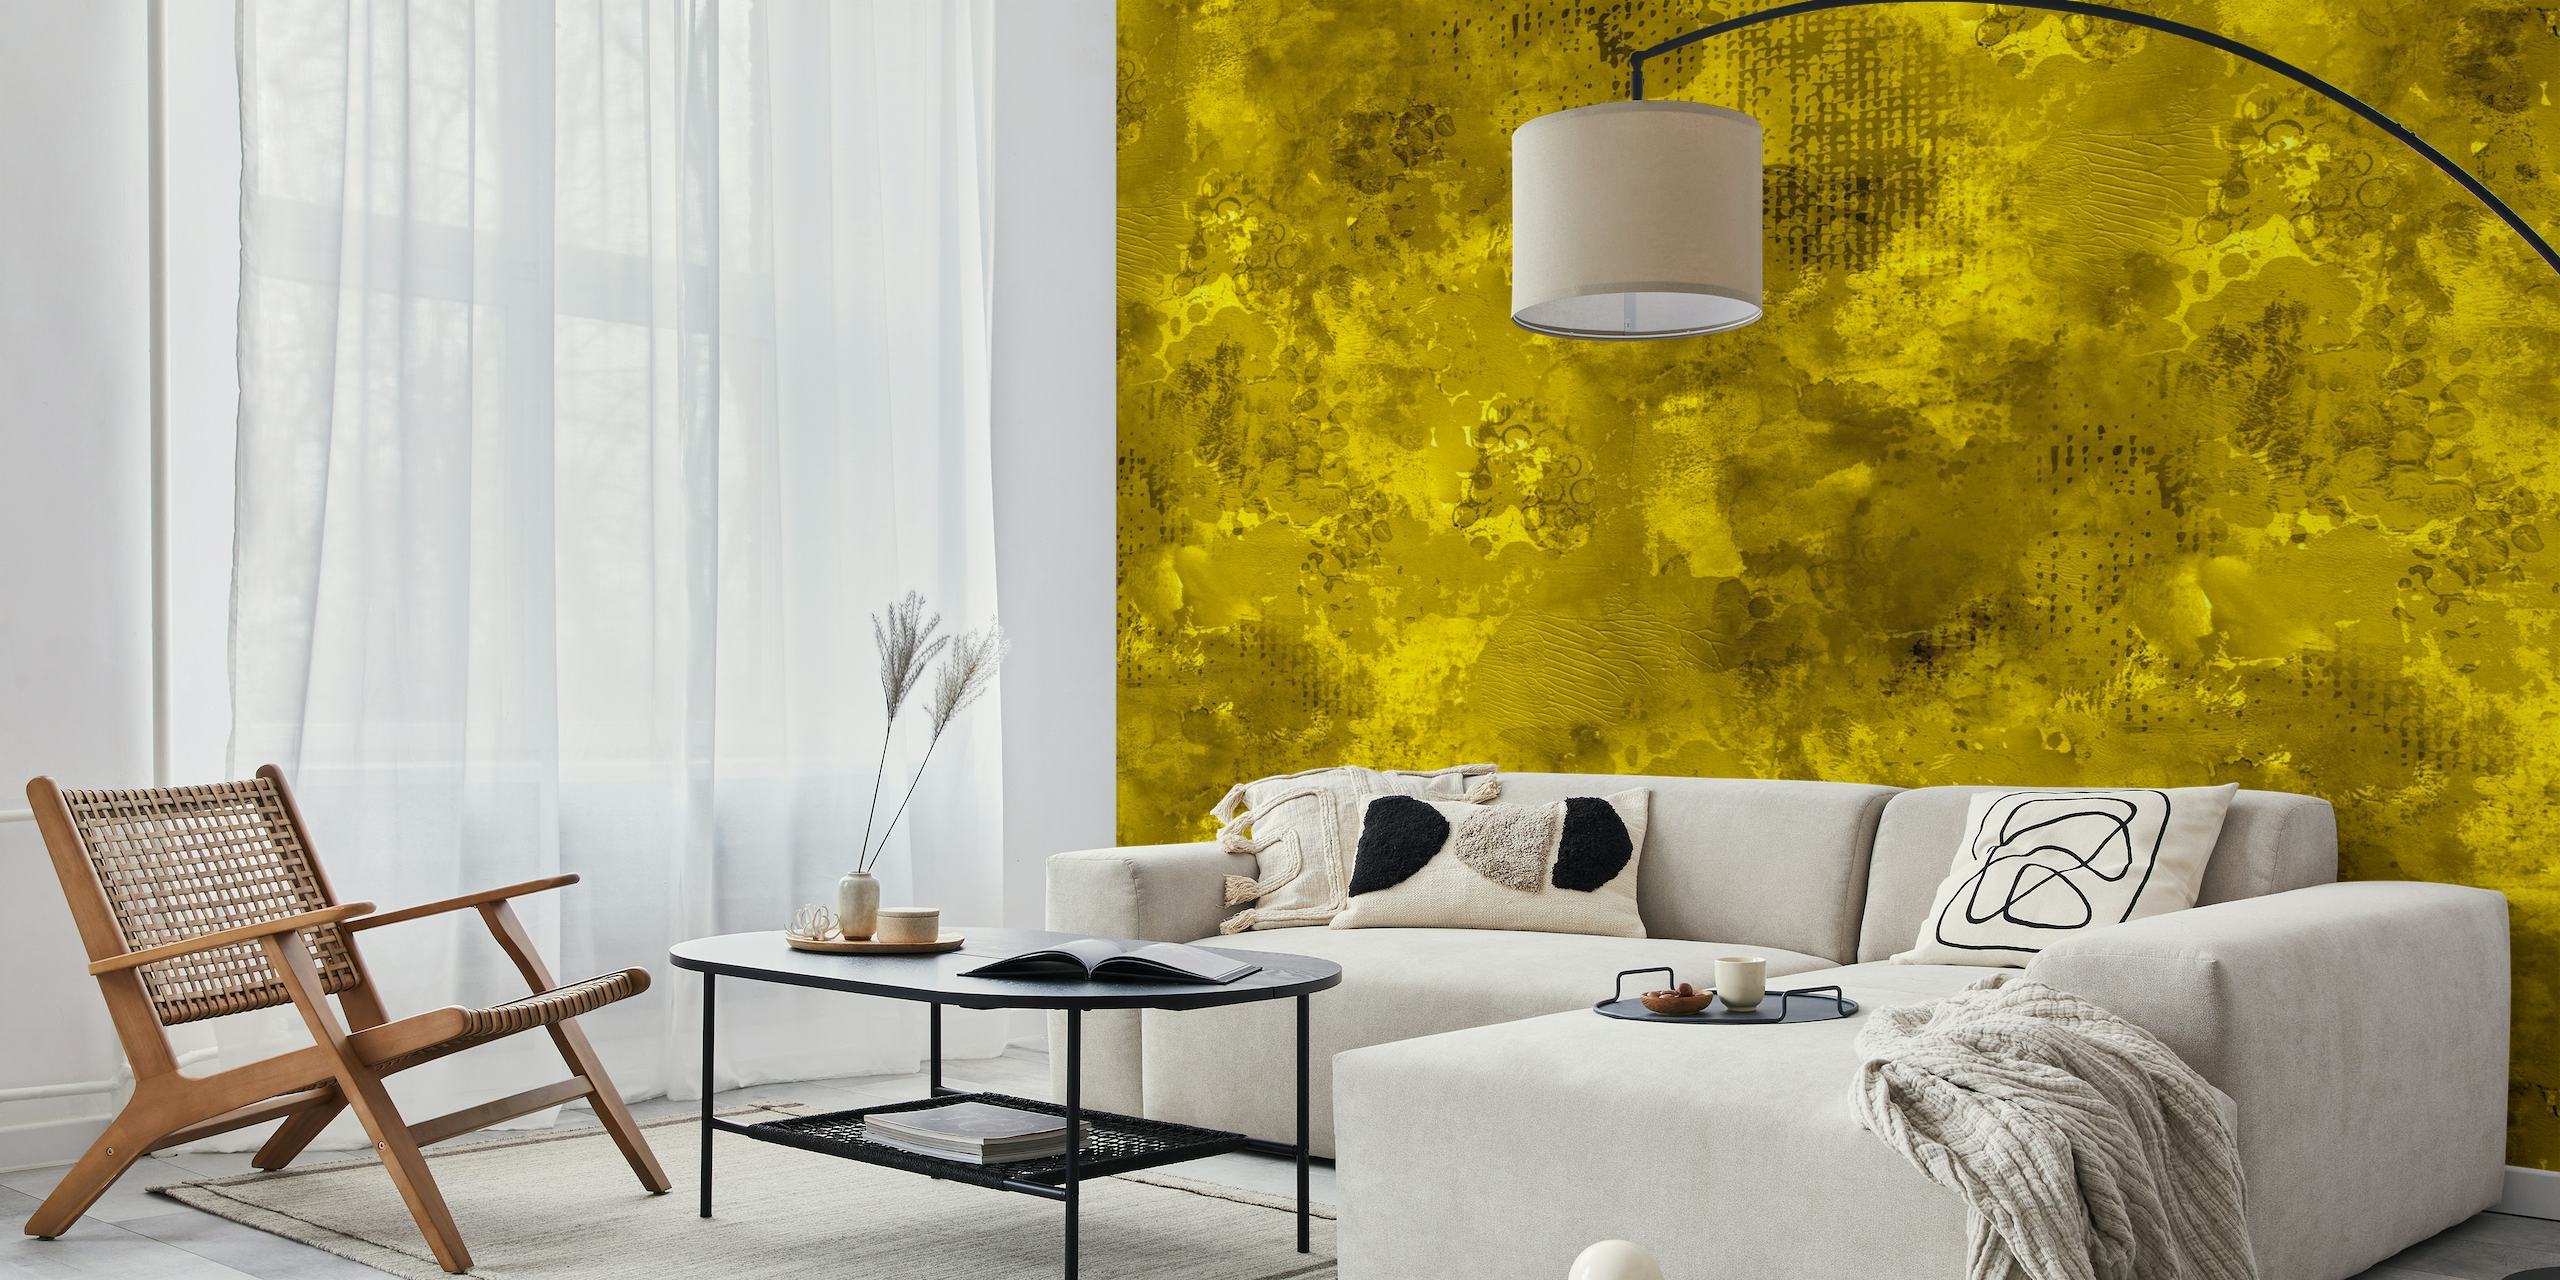 Dynamisches und kräftiges modernes Wandbild mit abstrakter gelber Farbstruktur, das ein lebendiges visuelles Statement setzt.